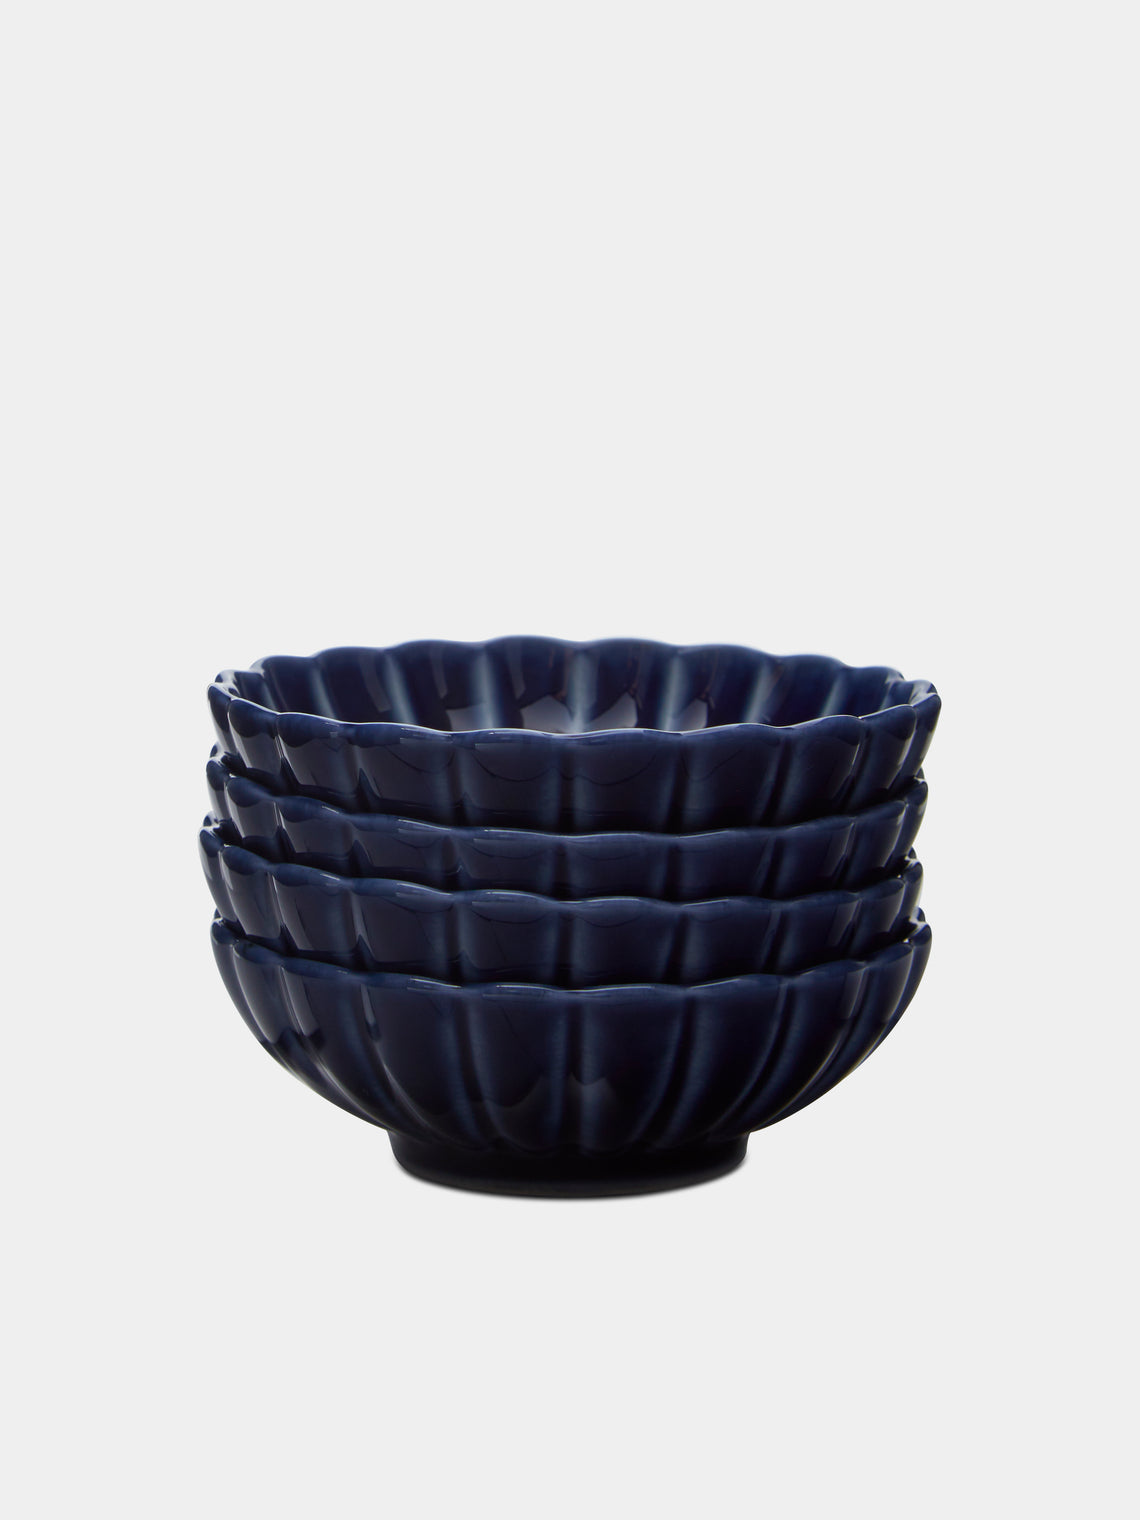 Kaneko Kohyo - Giyaman Urushi Ceramic Condiment Bowls (Set of 4) - Blue - ABASK